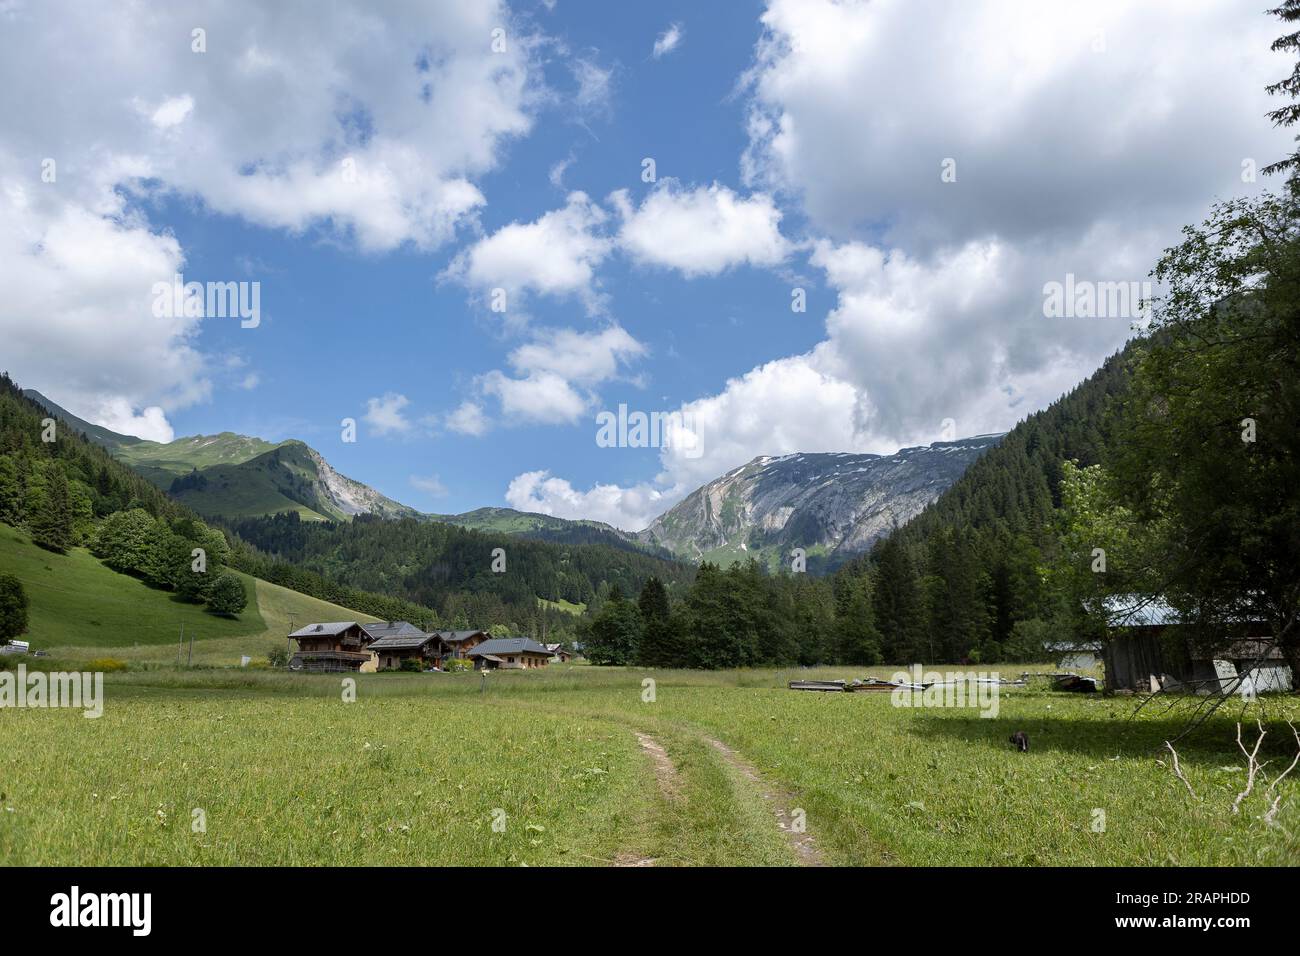 Un paio di autentiche case alpine nella valle della Morzine con la spettacolare natura della catena montuosa delle Alpi francesi durante l'estate contro il cielo blu con le nuvole Foto Stock